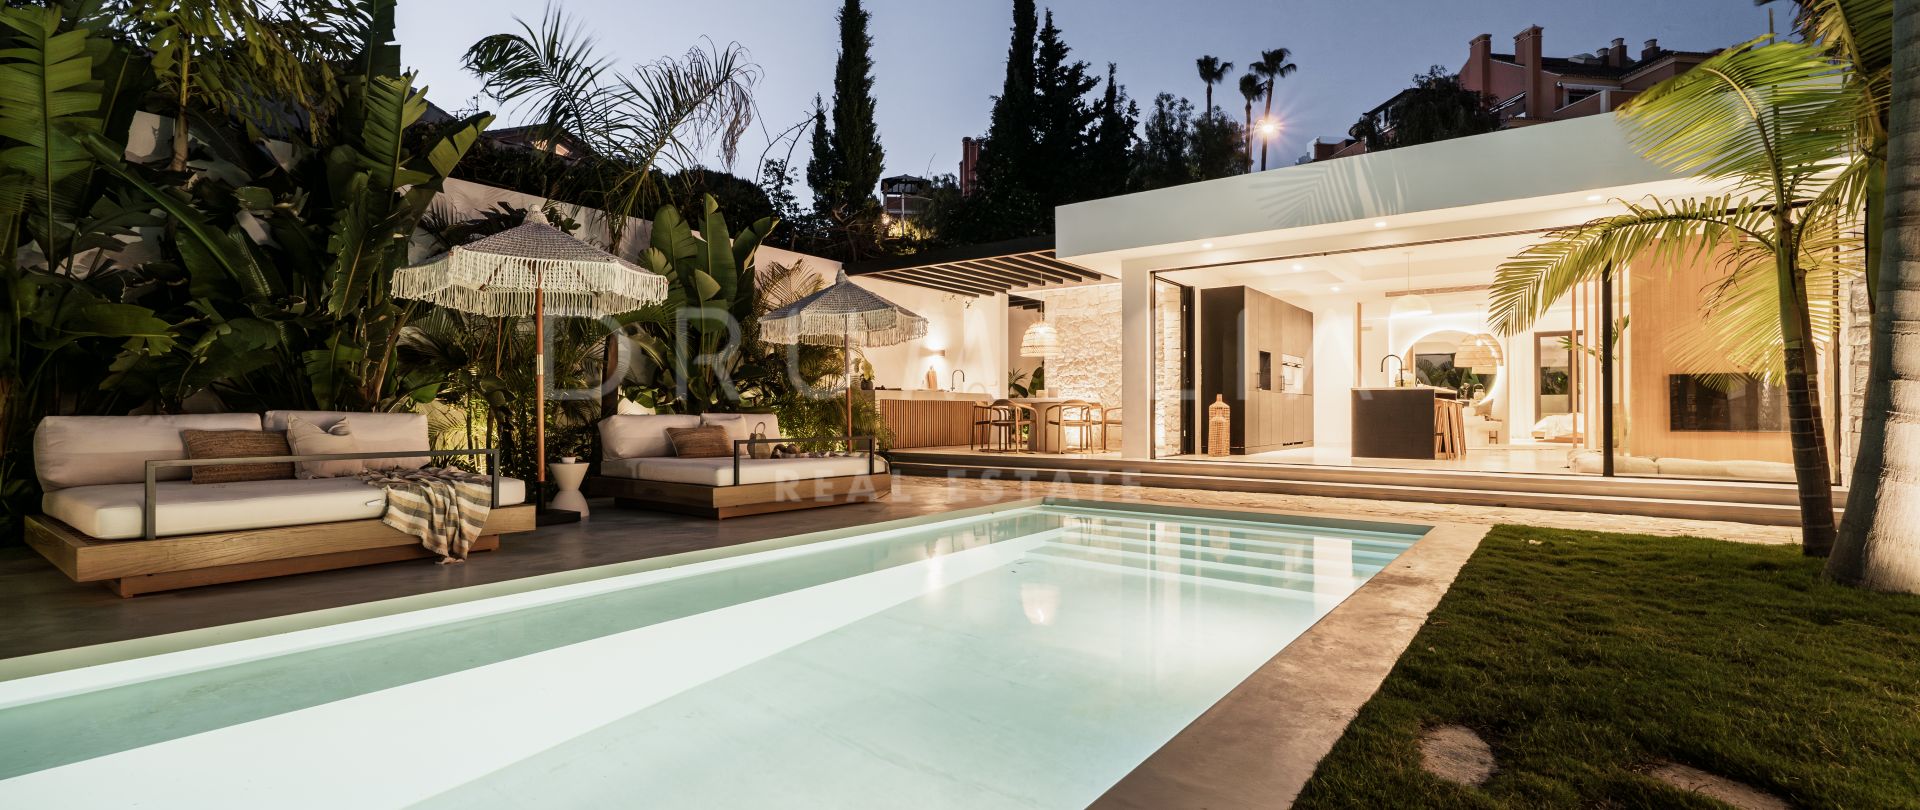 Fantastisk ny villa i balinesisk stil på ett utmärkt läge i Nueva Andalucia, Marbella